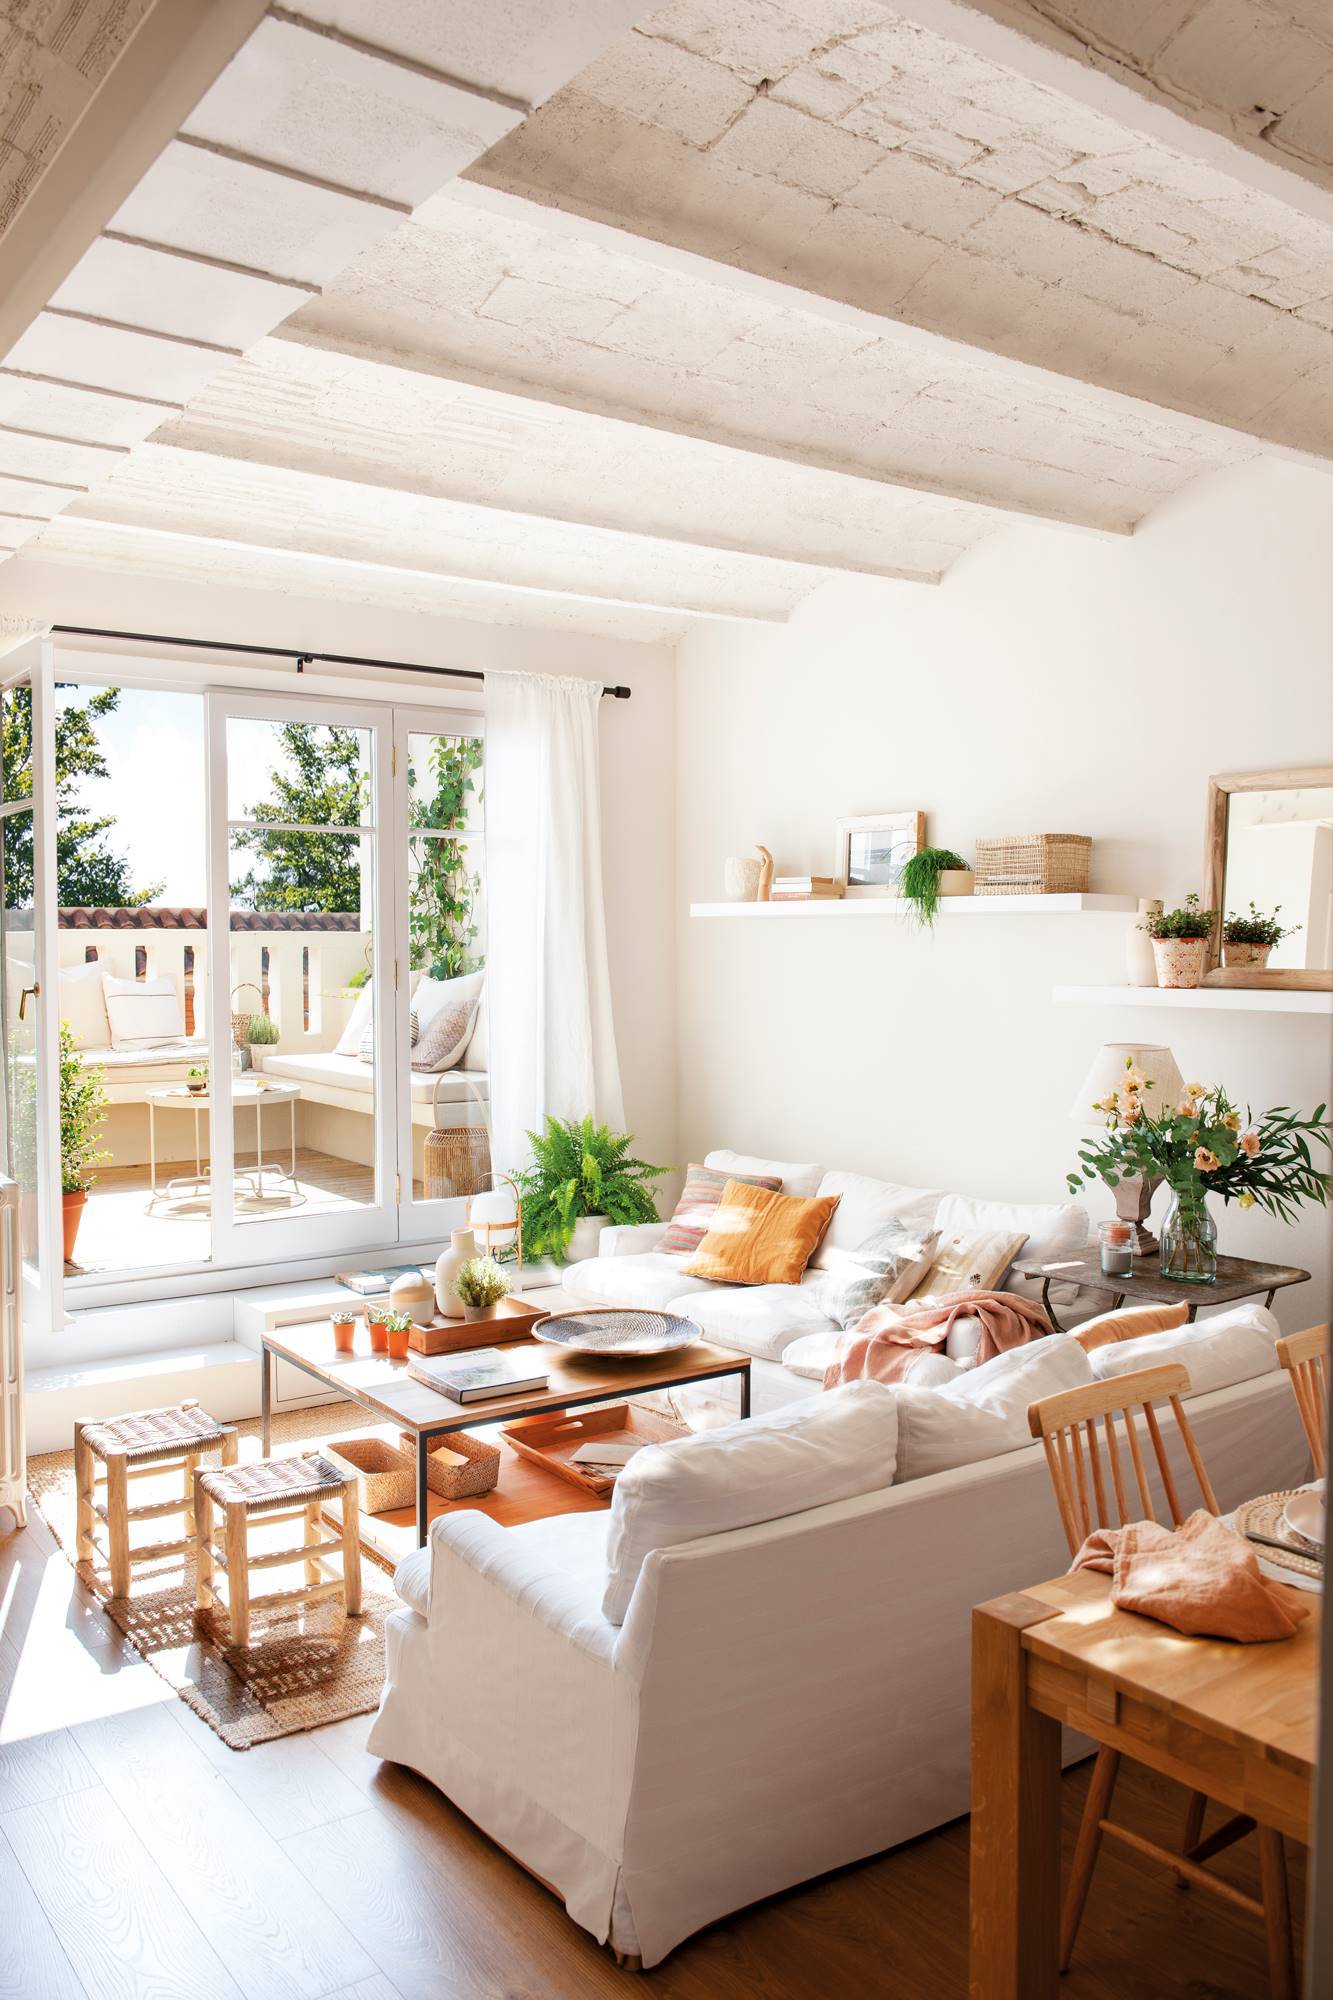 Salón pequeño en blanco con dos sofás en "L" y ventanal a la terraza 00513332